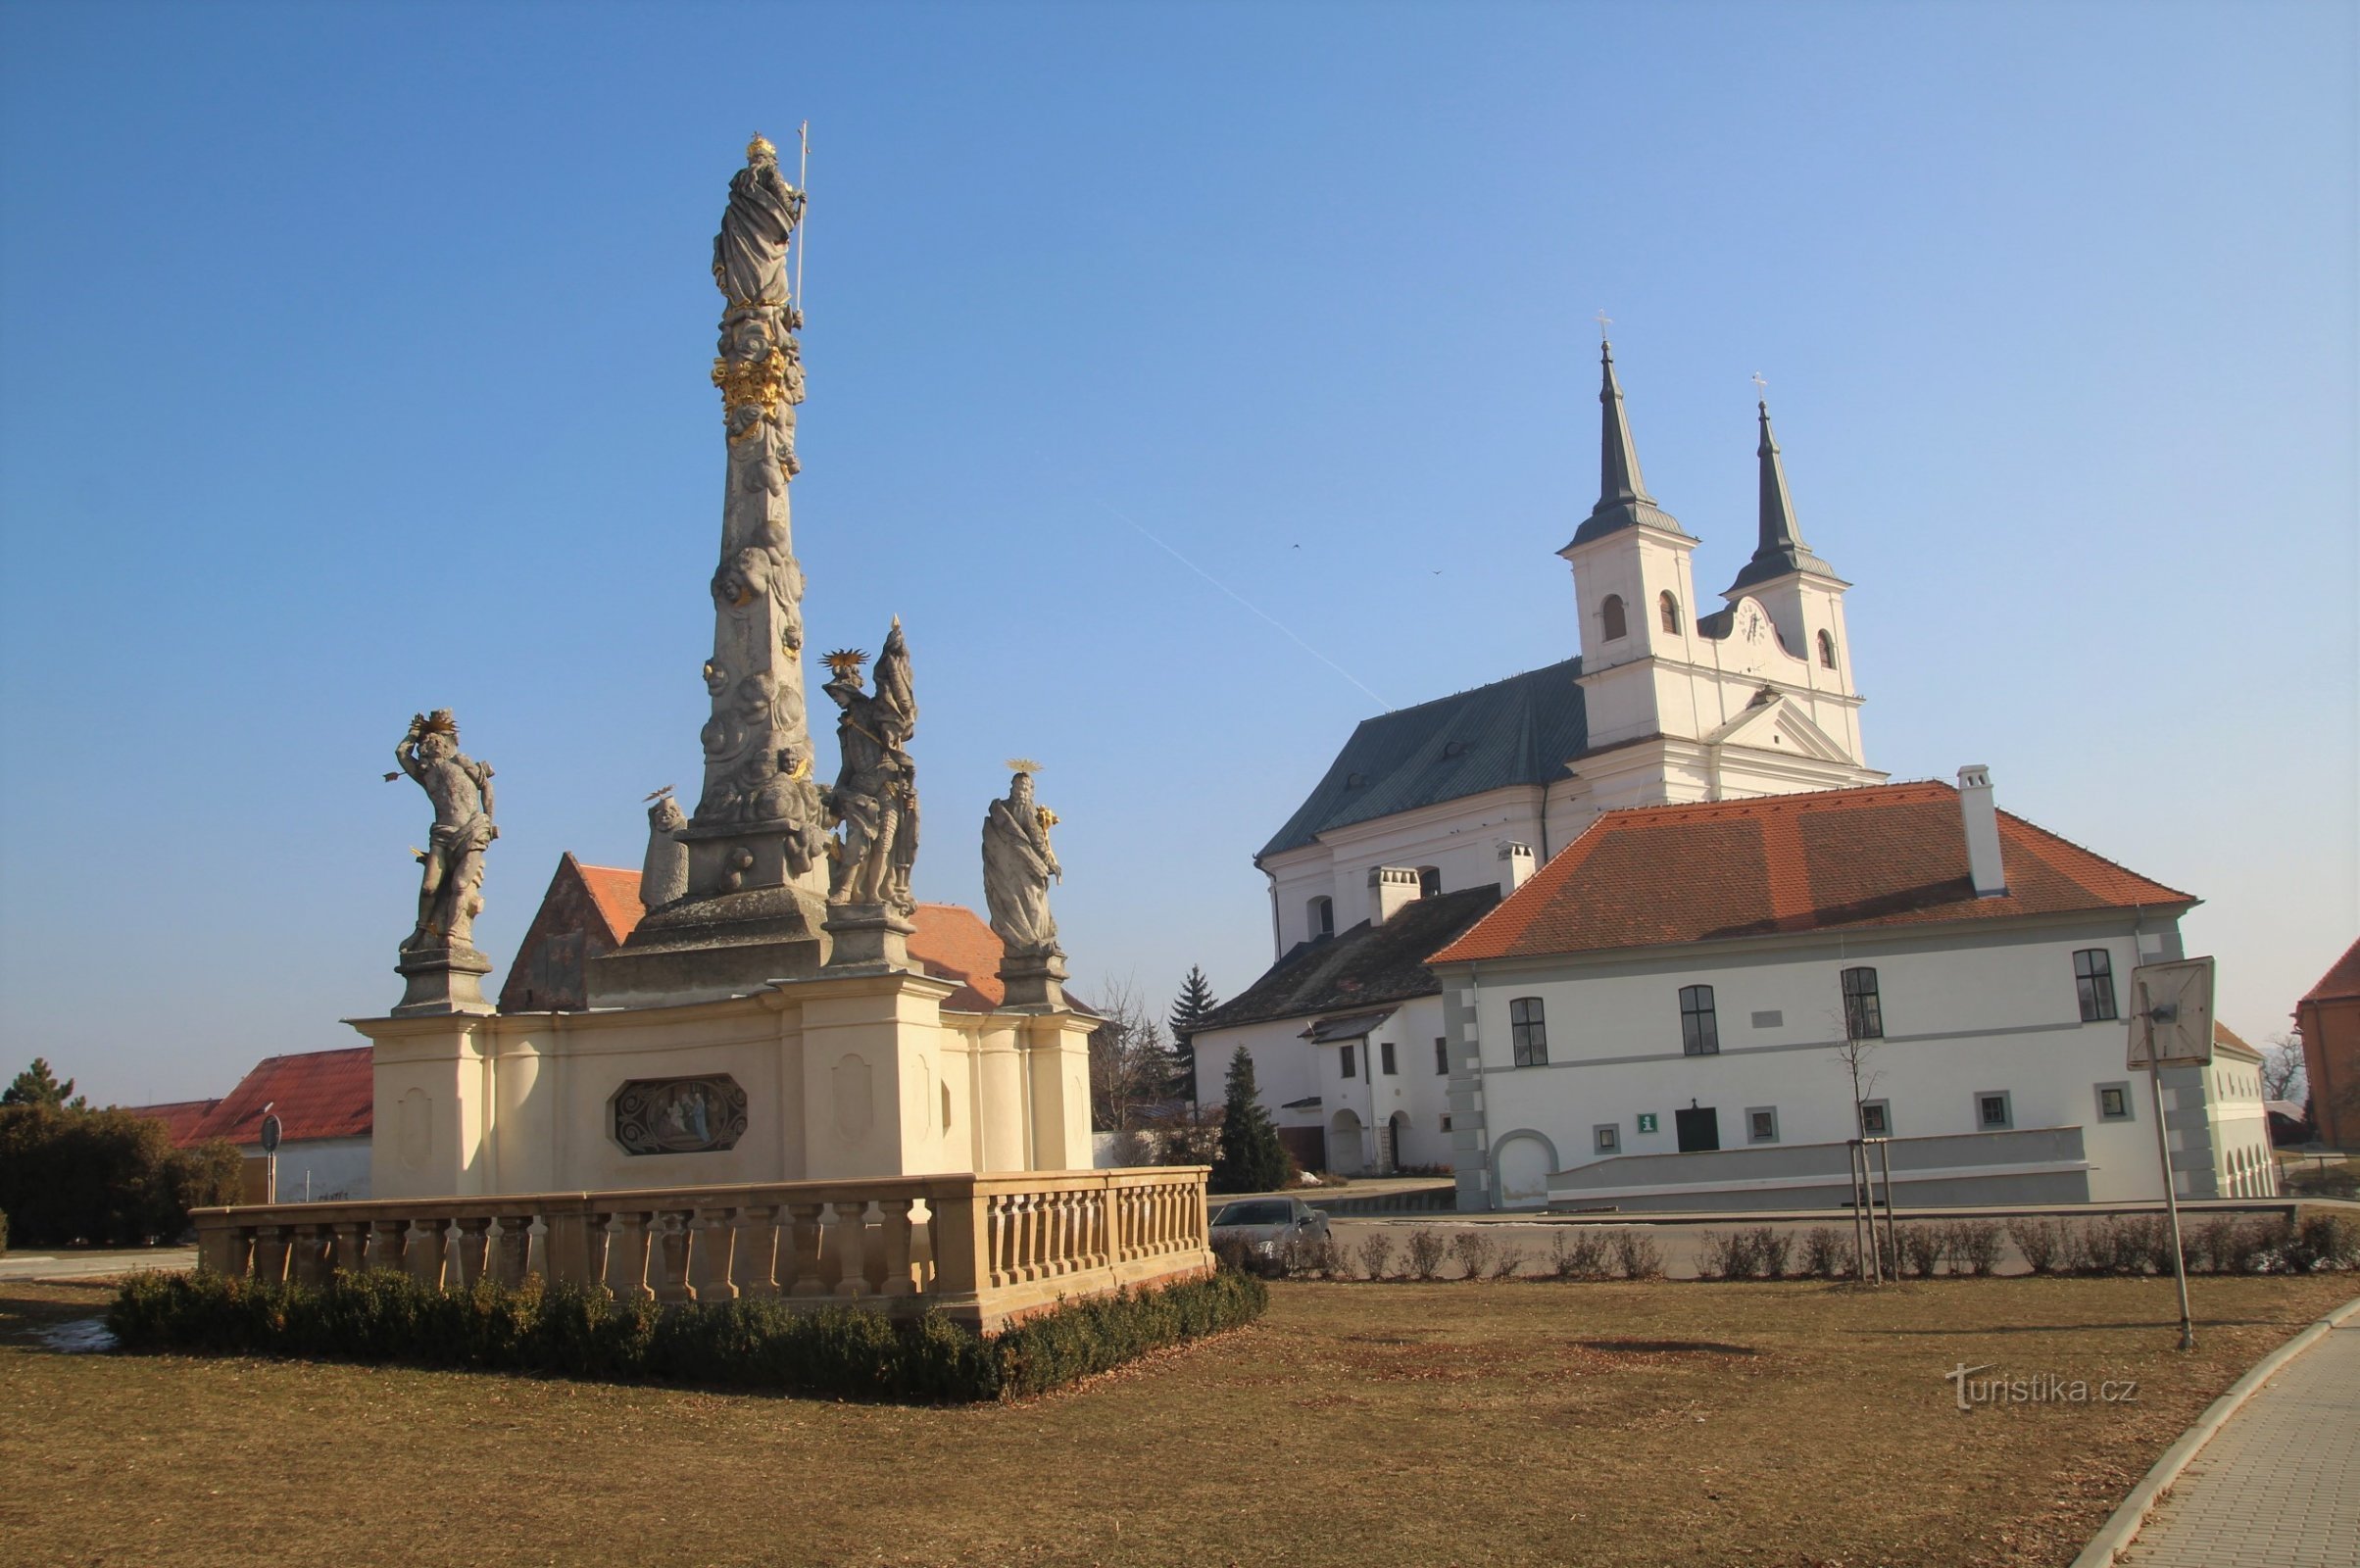 Drnholecké náměstí con la colonna mariana, il vecchio municipio e la chiesa della Santissima Trinità